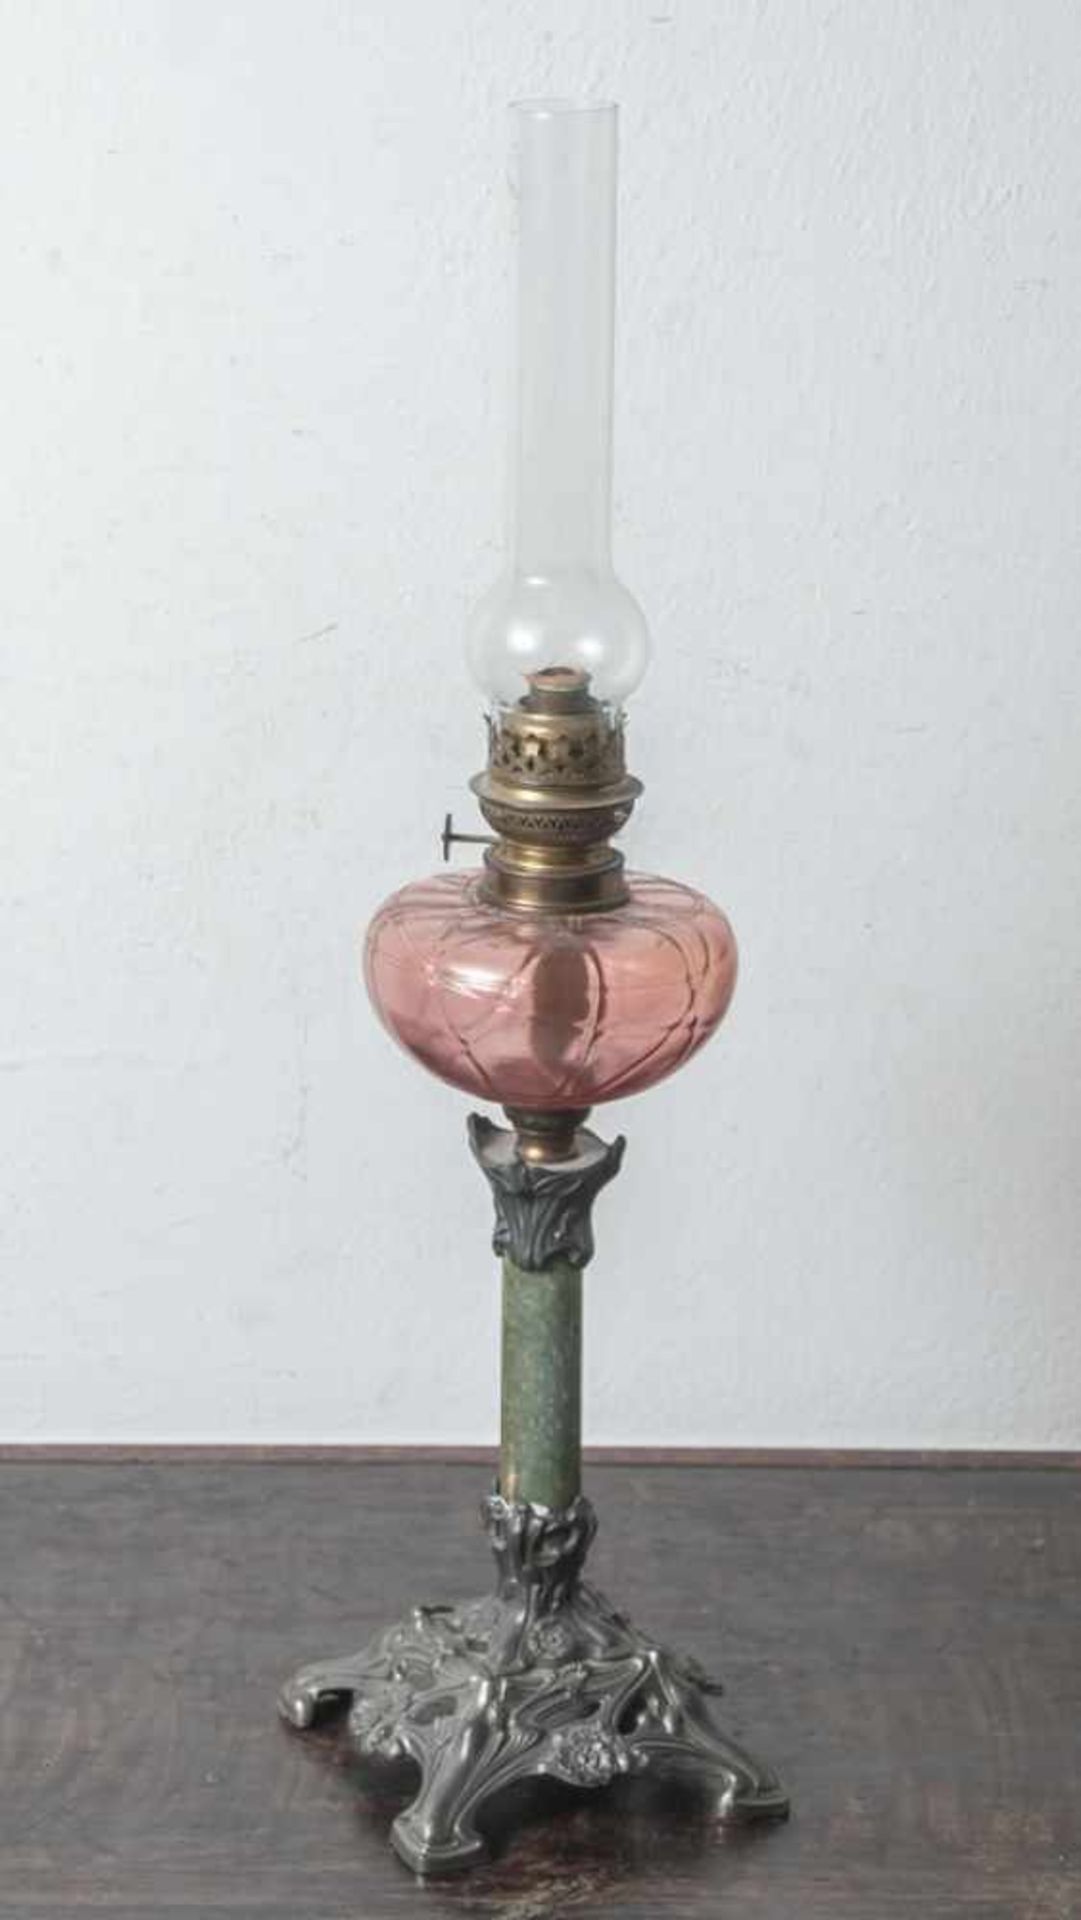 Petroleumlampe, um 1900, Jugendstil, Glasbehälter in der Art von Lötz gearbeitet. H. ca.70 cm.